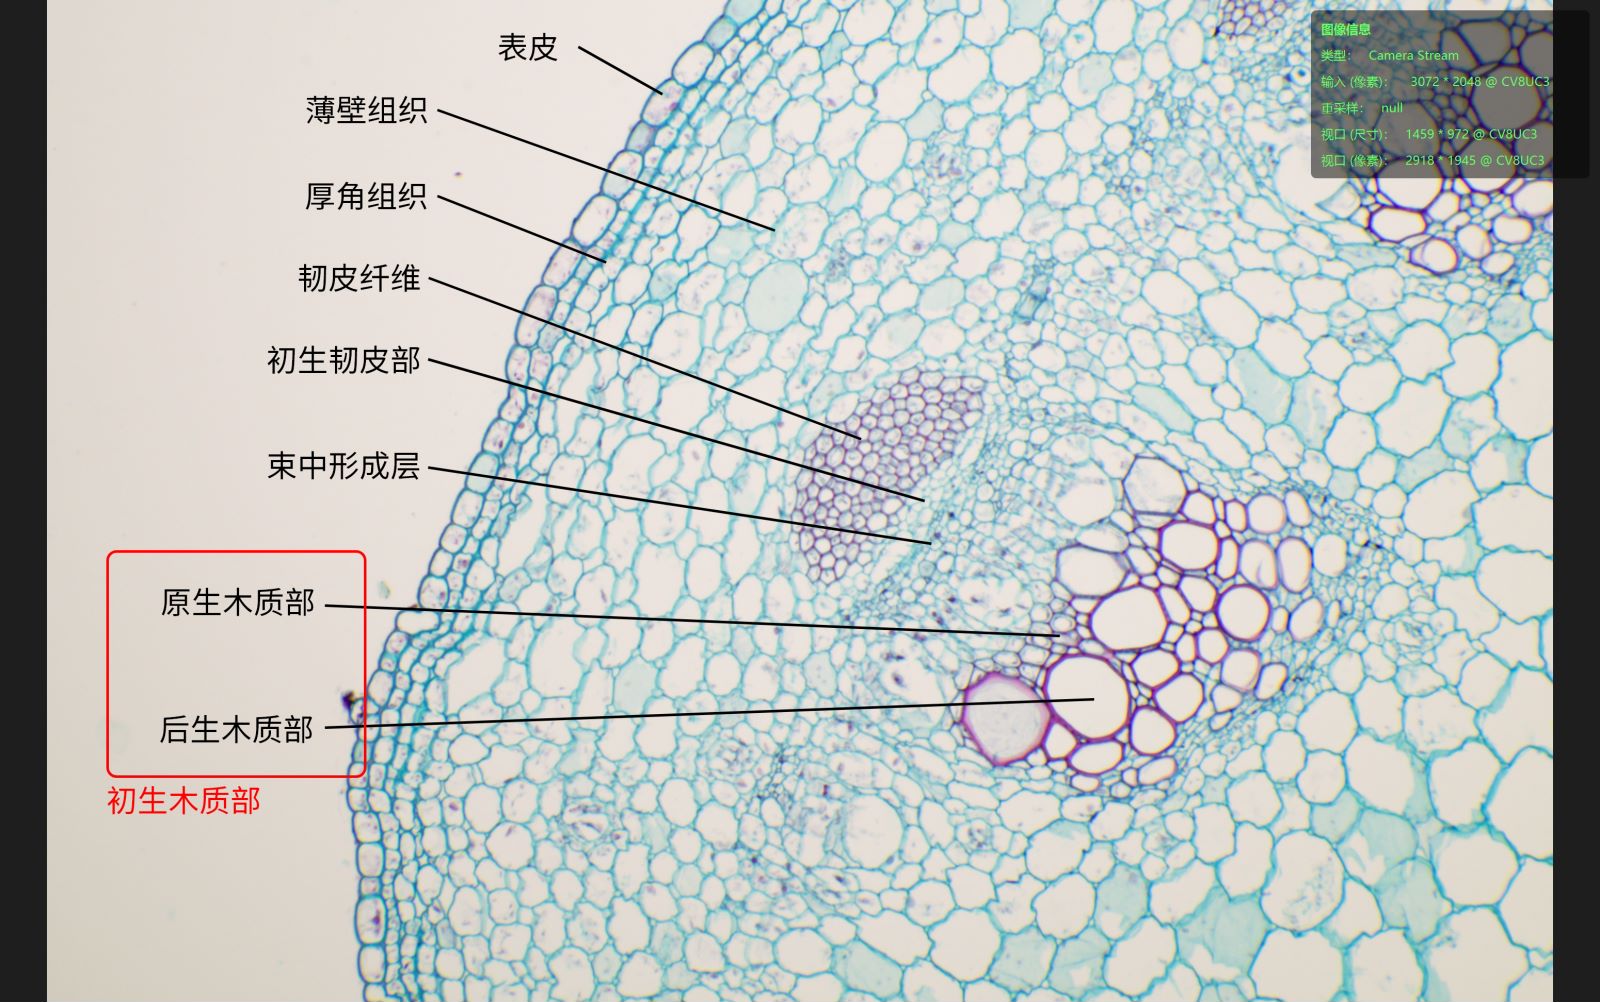 双子叶植物茎的结构图图片